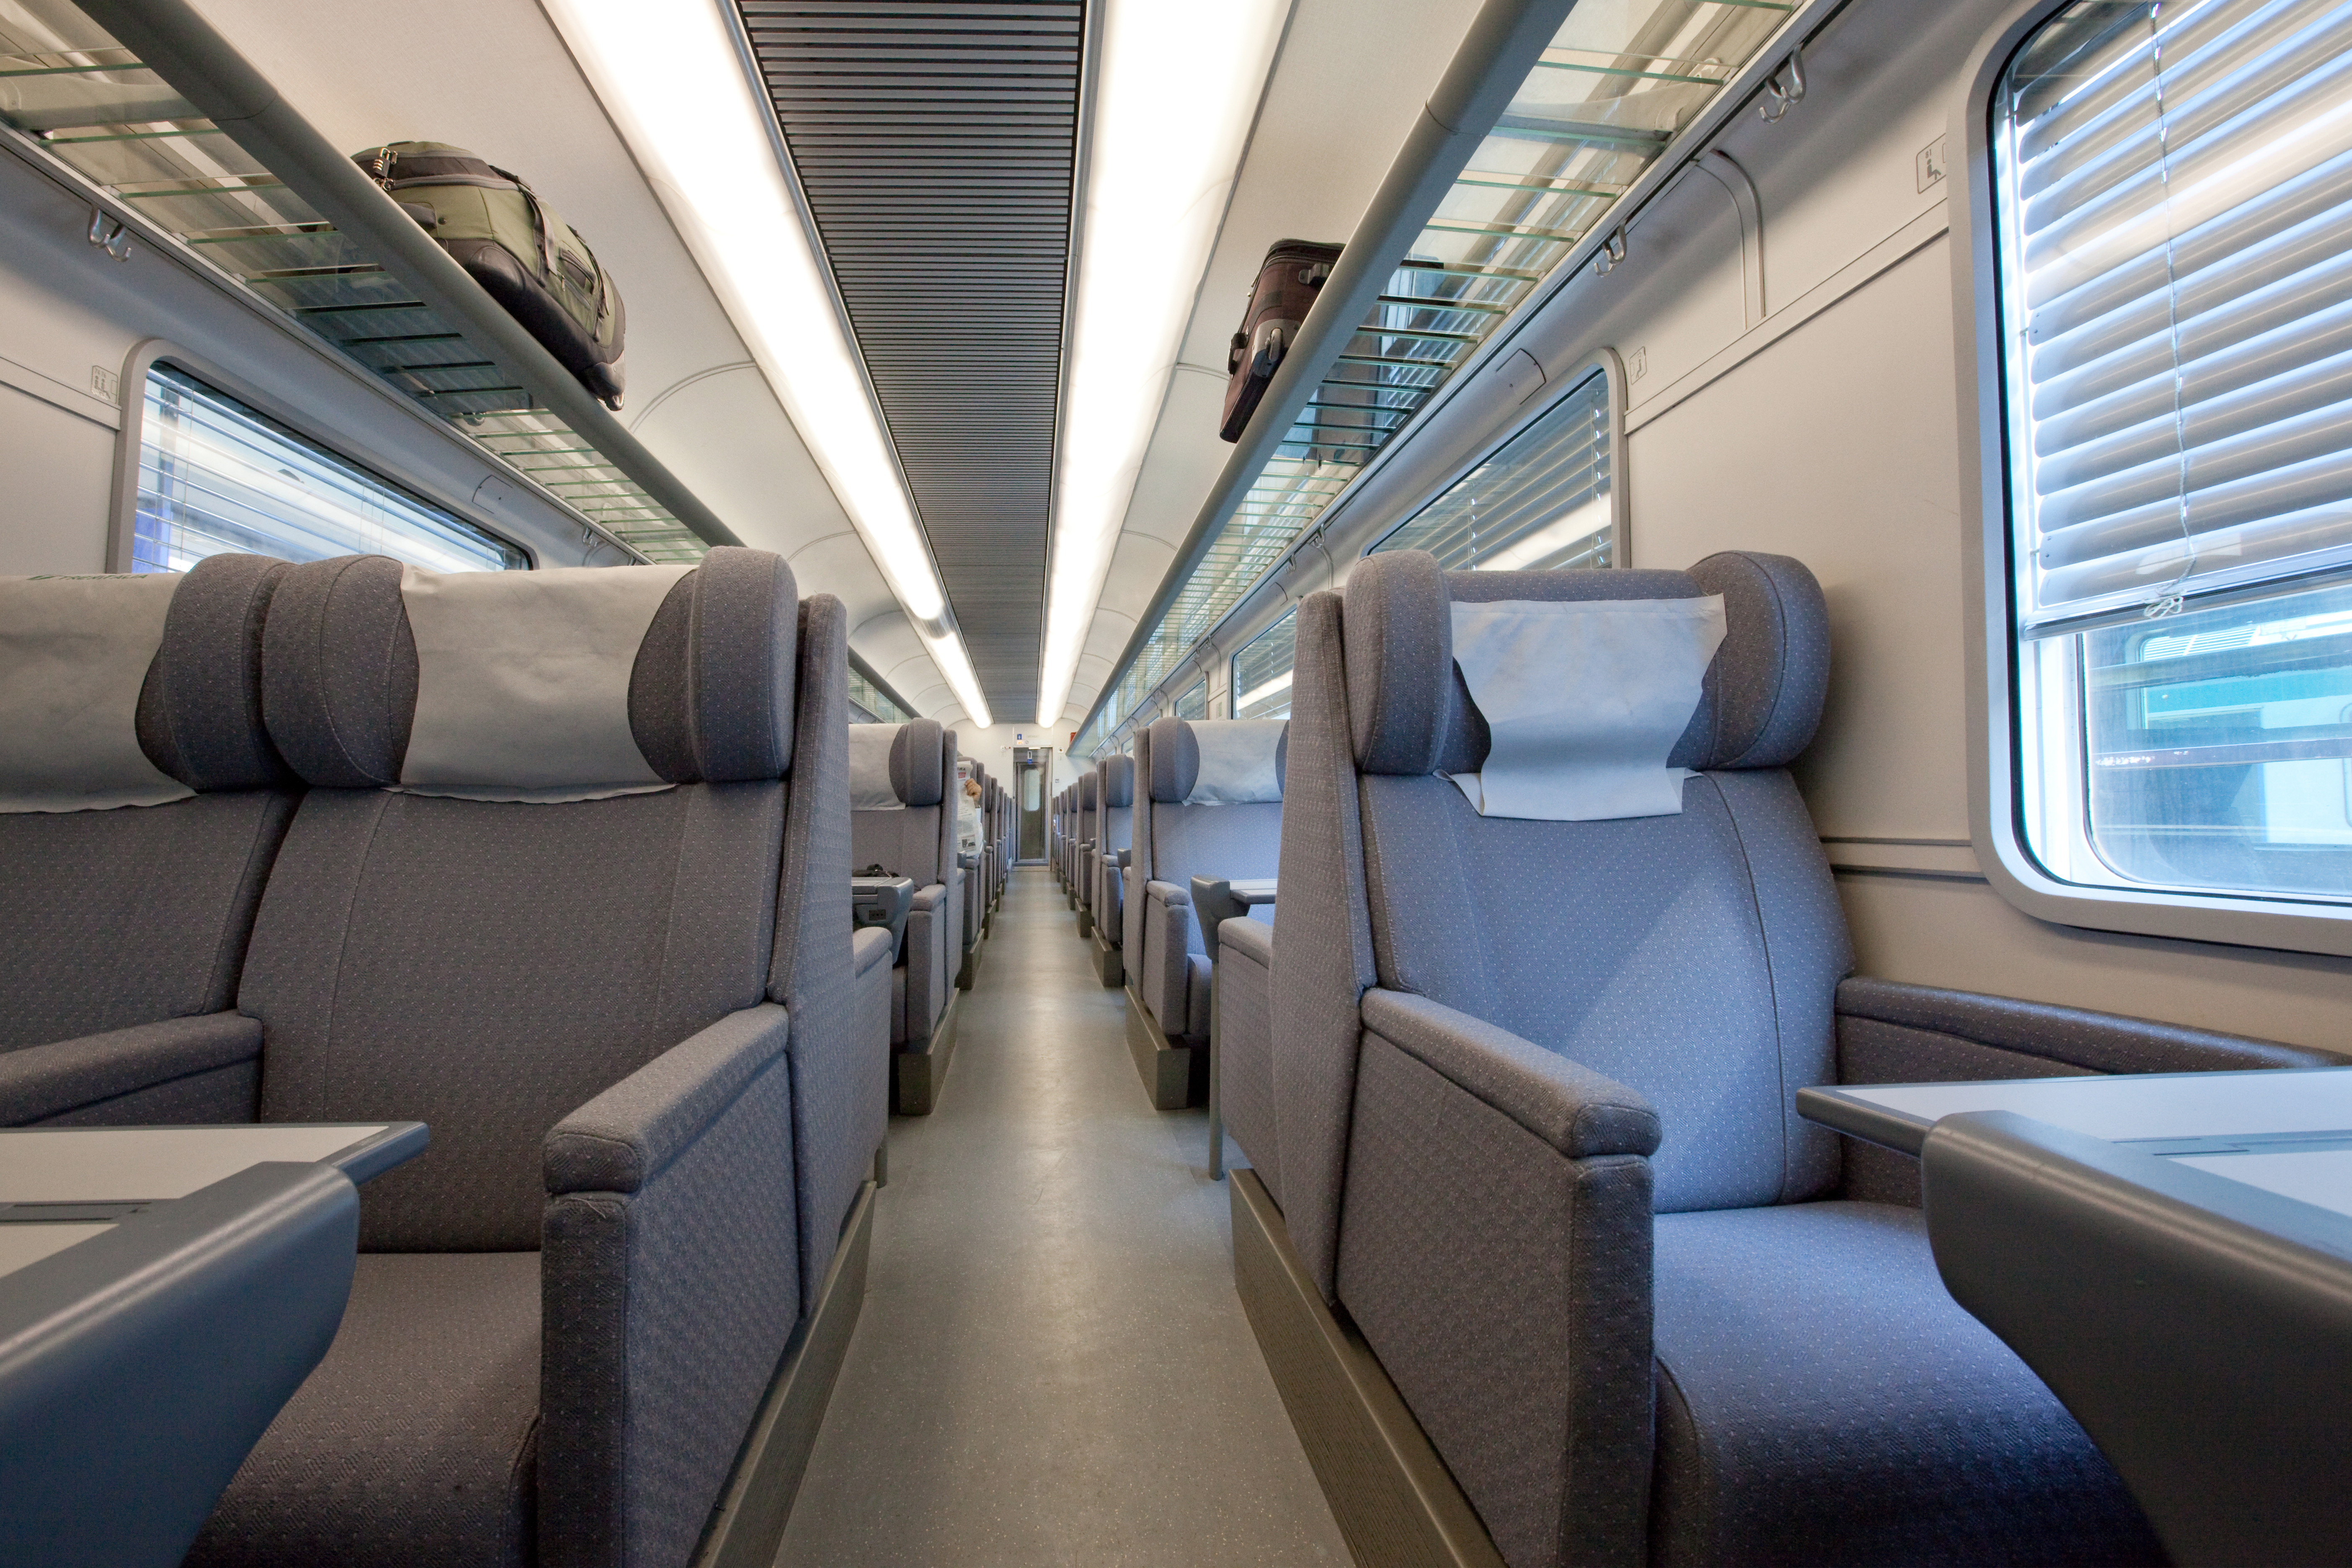 An empty first-class train cabin | Source: Shutterstock